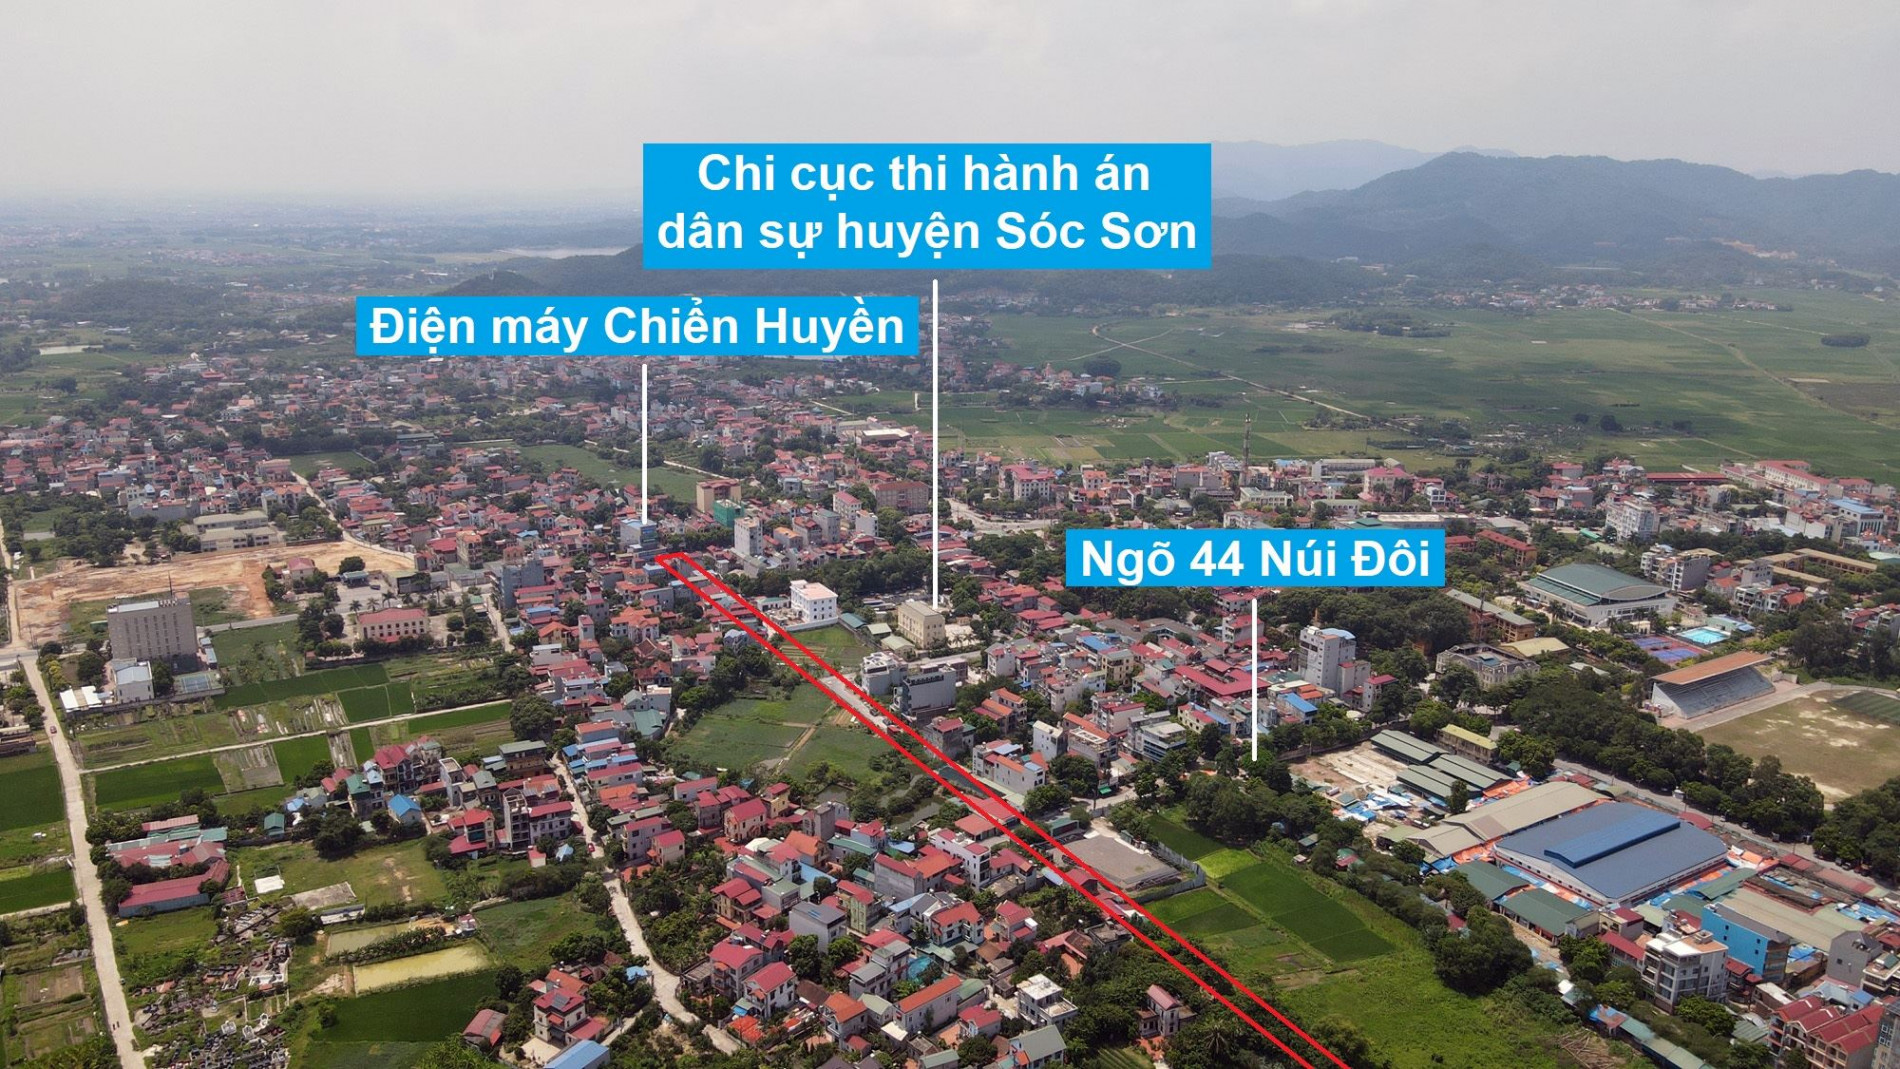 Đường sẽ mở theo quy hoạch ở thị trấn Sóc Sơn, Sóc Sơn, Hà Nội (phần 3)